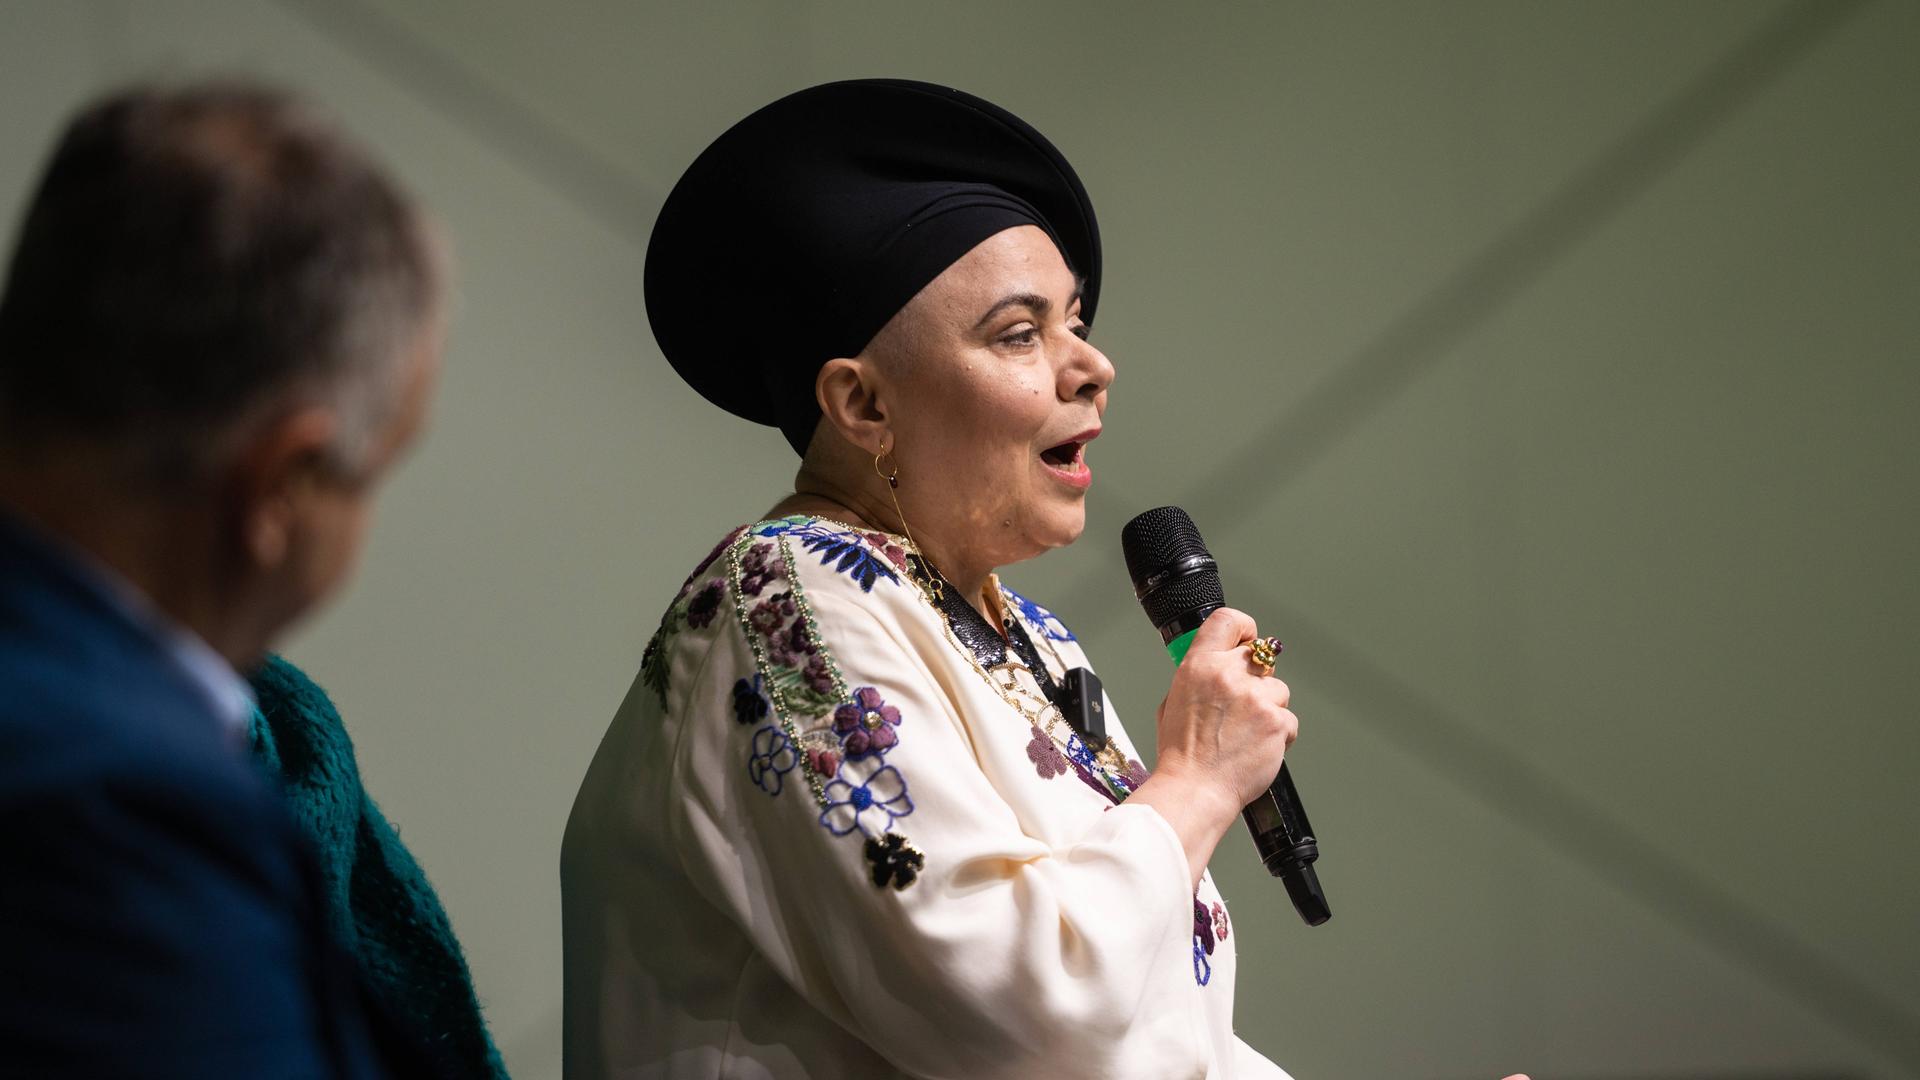 Die italienische Autorin Michela Murgia spricht in ein Mikro. Sie trägt eine blumenbestickte Bluse und einen schwarzen Hut.